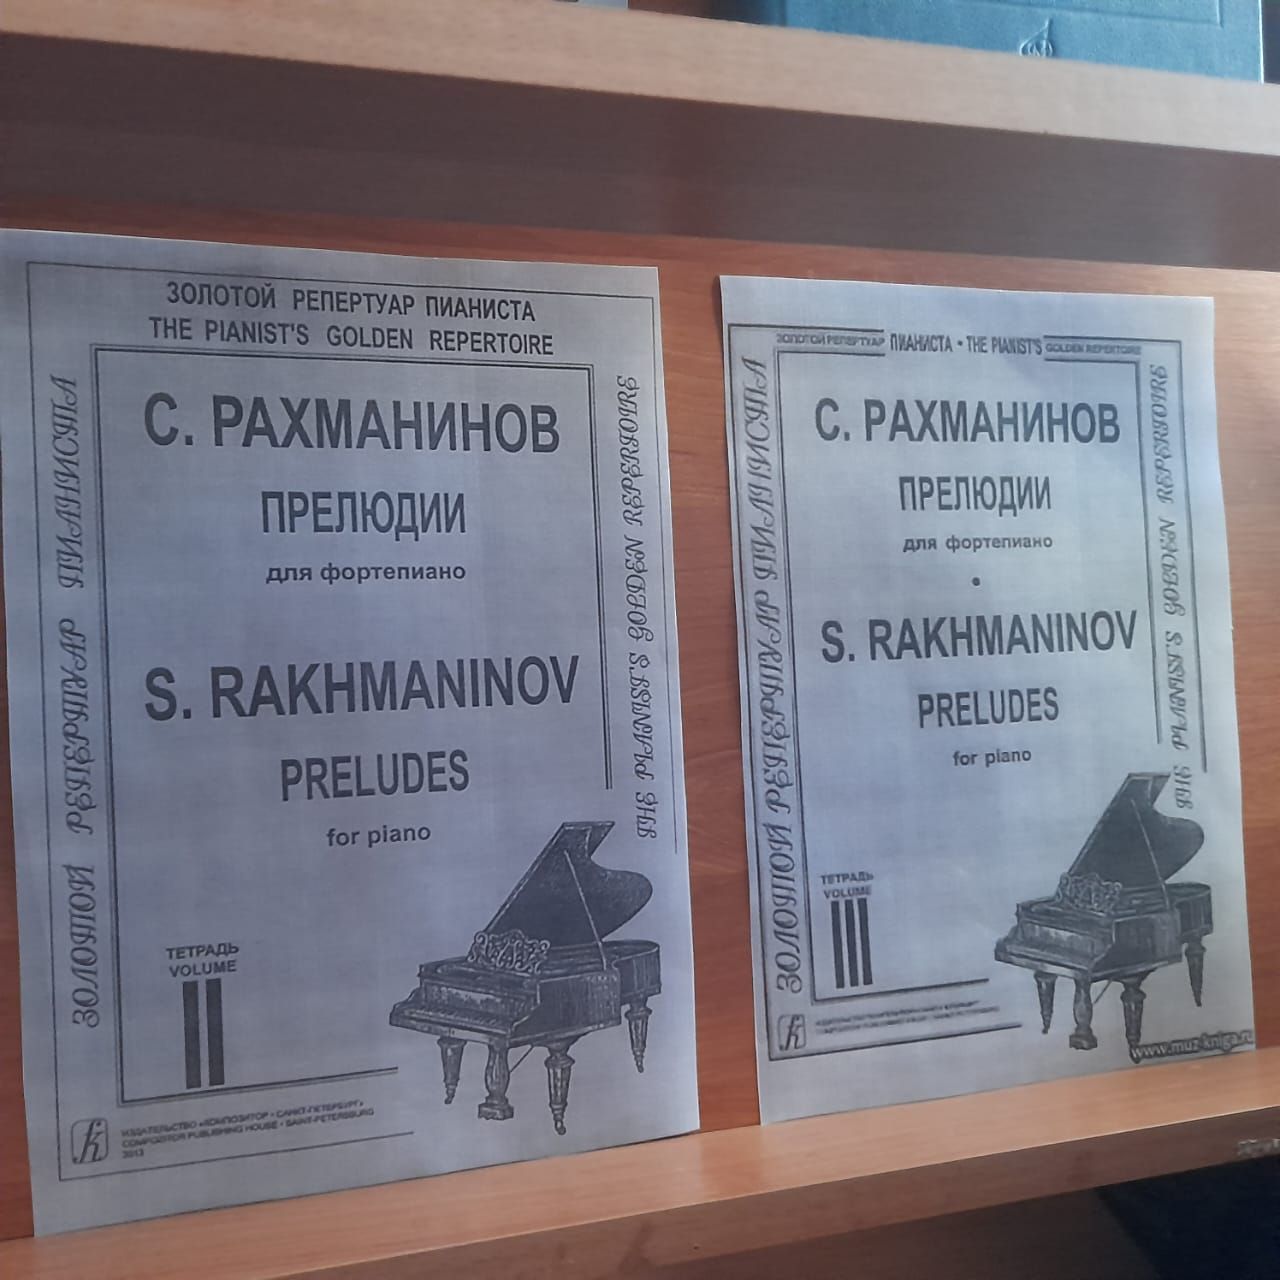 В Лаишевской библиотеке оформлена новая книжная выставка «Божьей милостью музыкант»